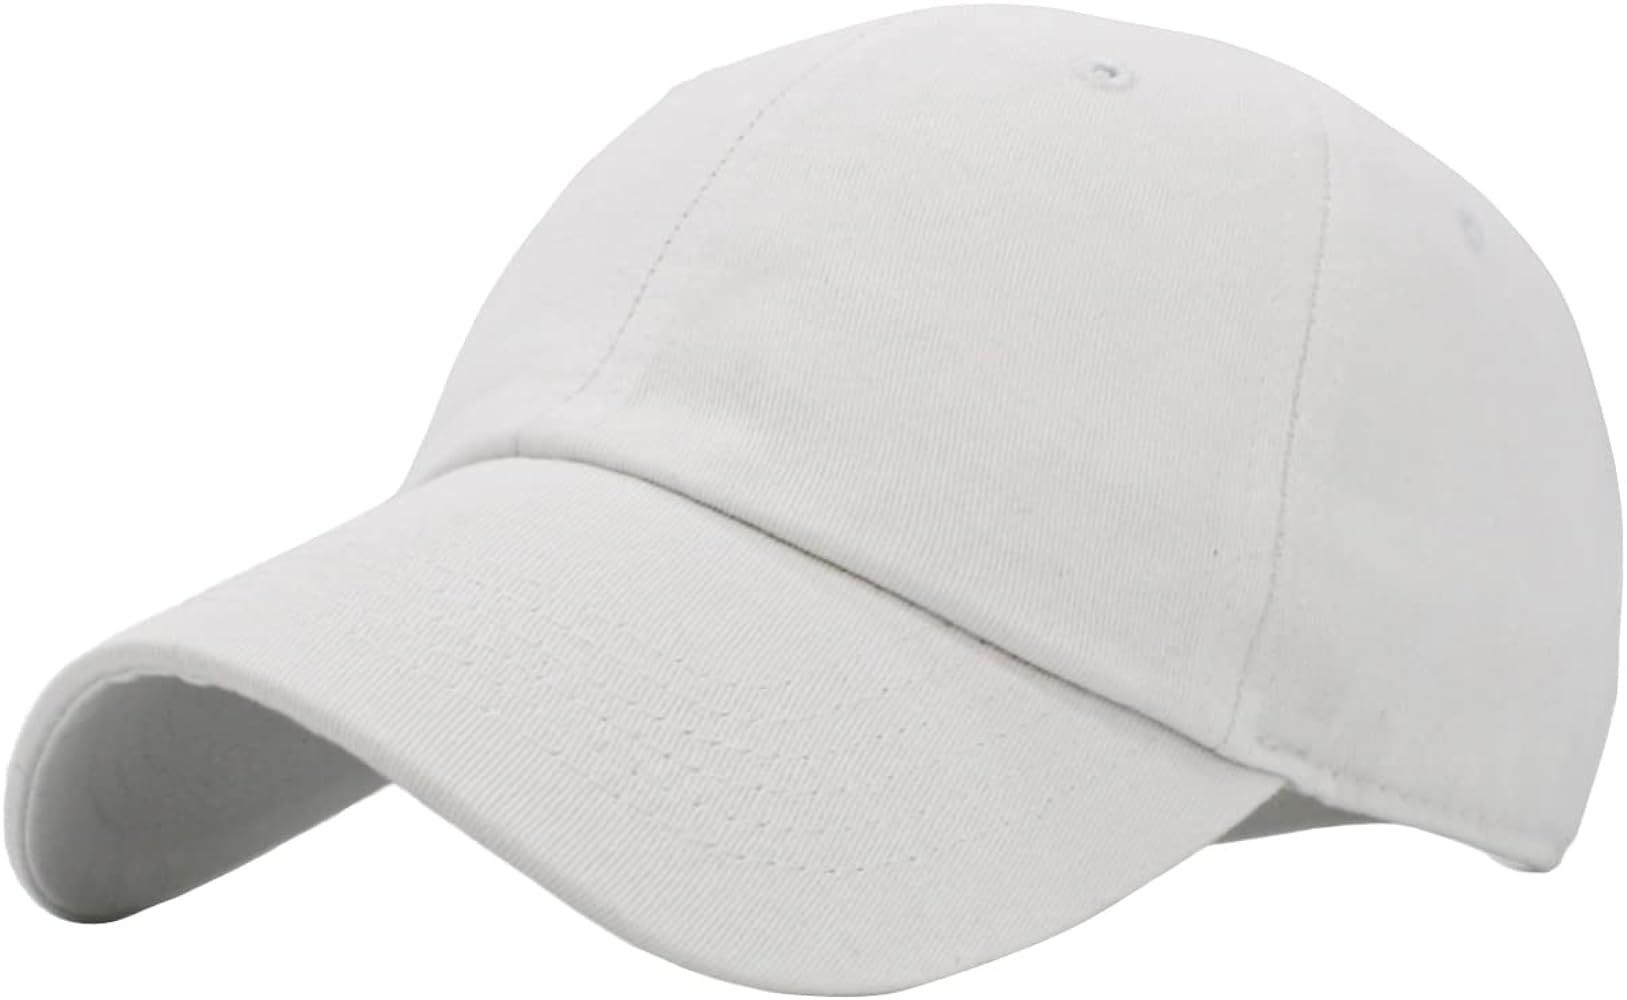 KBETHOS Original Classic Low Profile Cotton Hat Men Women Baseball Cap Dad Hat Adjustable Unconstruc | Amazon (US)